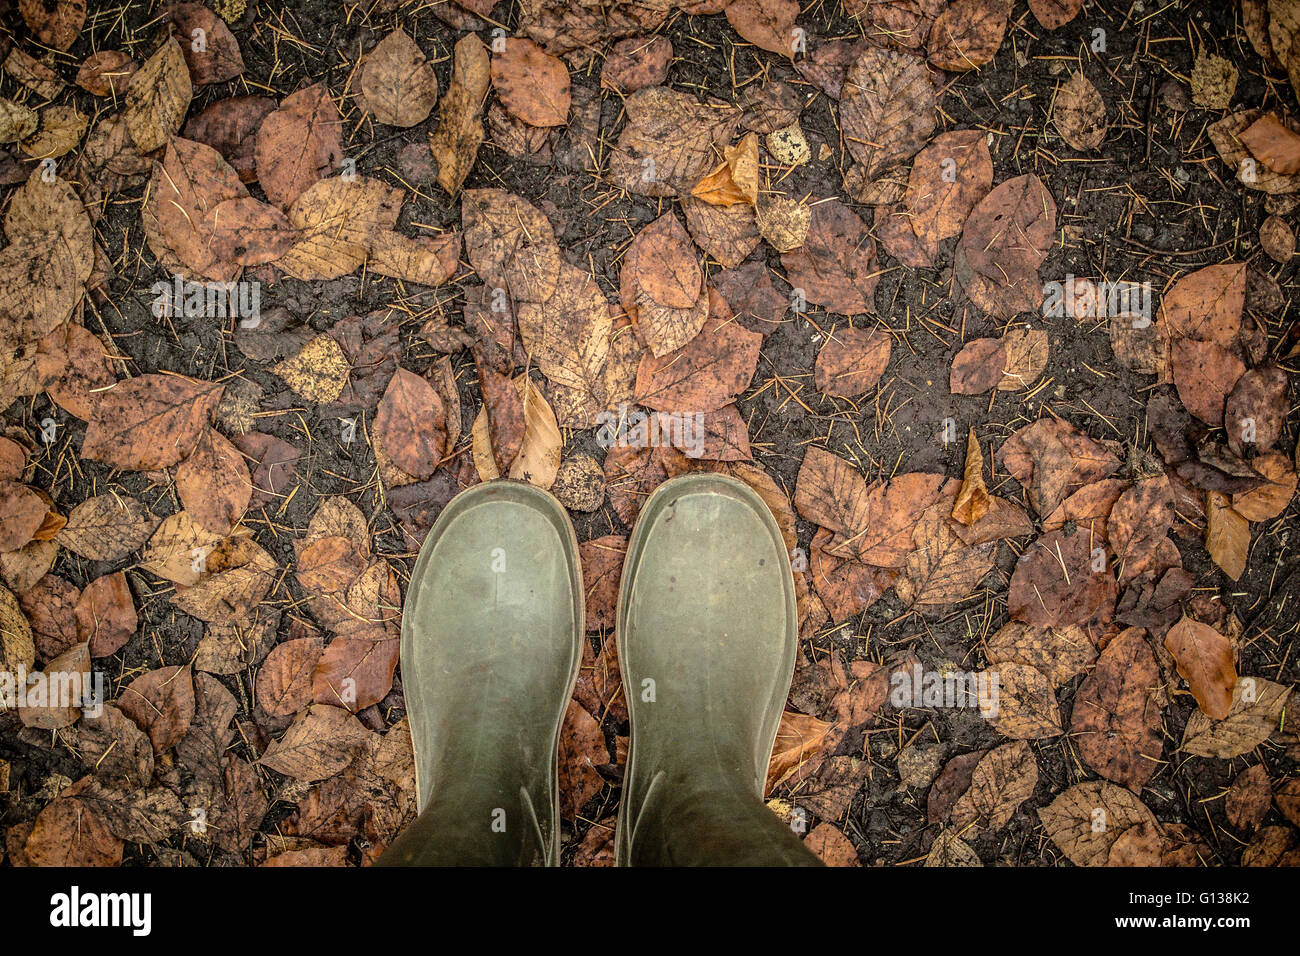 Bottes Wellington vert sur une feuille d'automne humide, couverts de plancher bois Banque D'Images